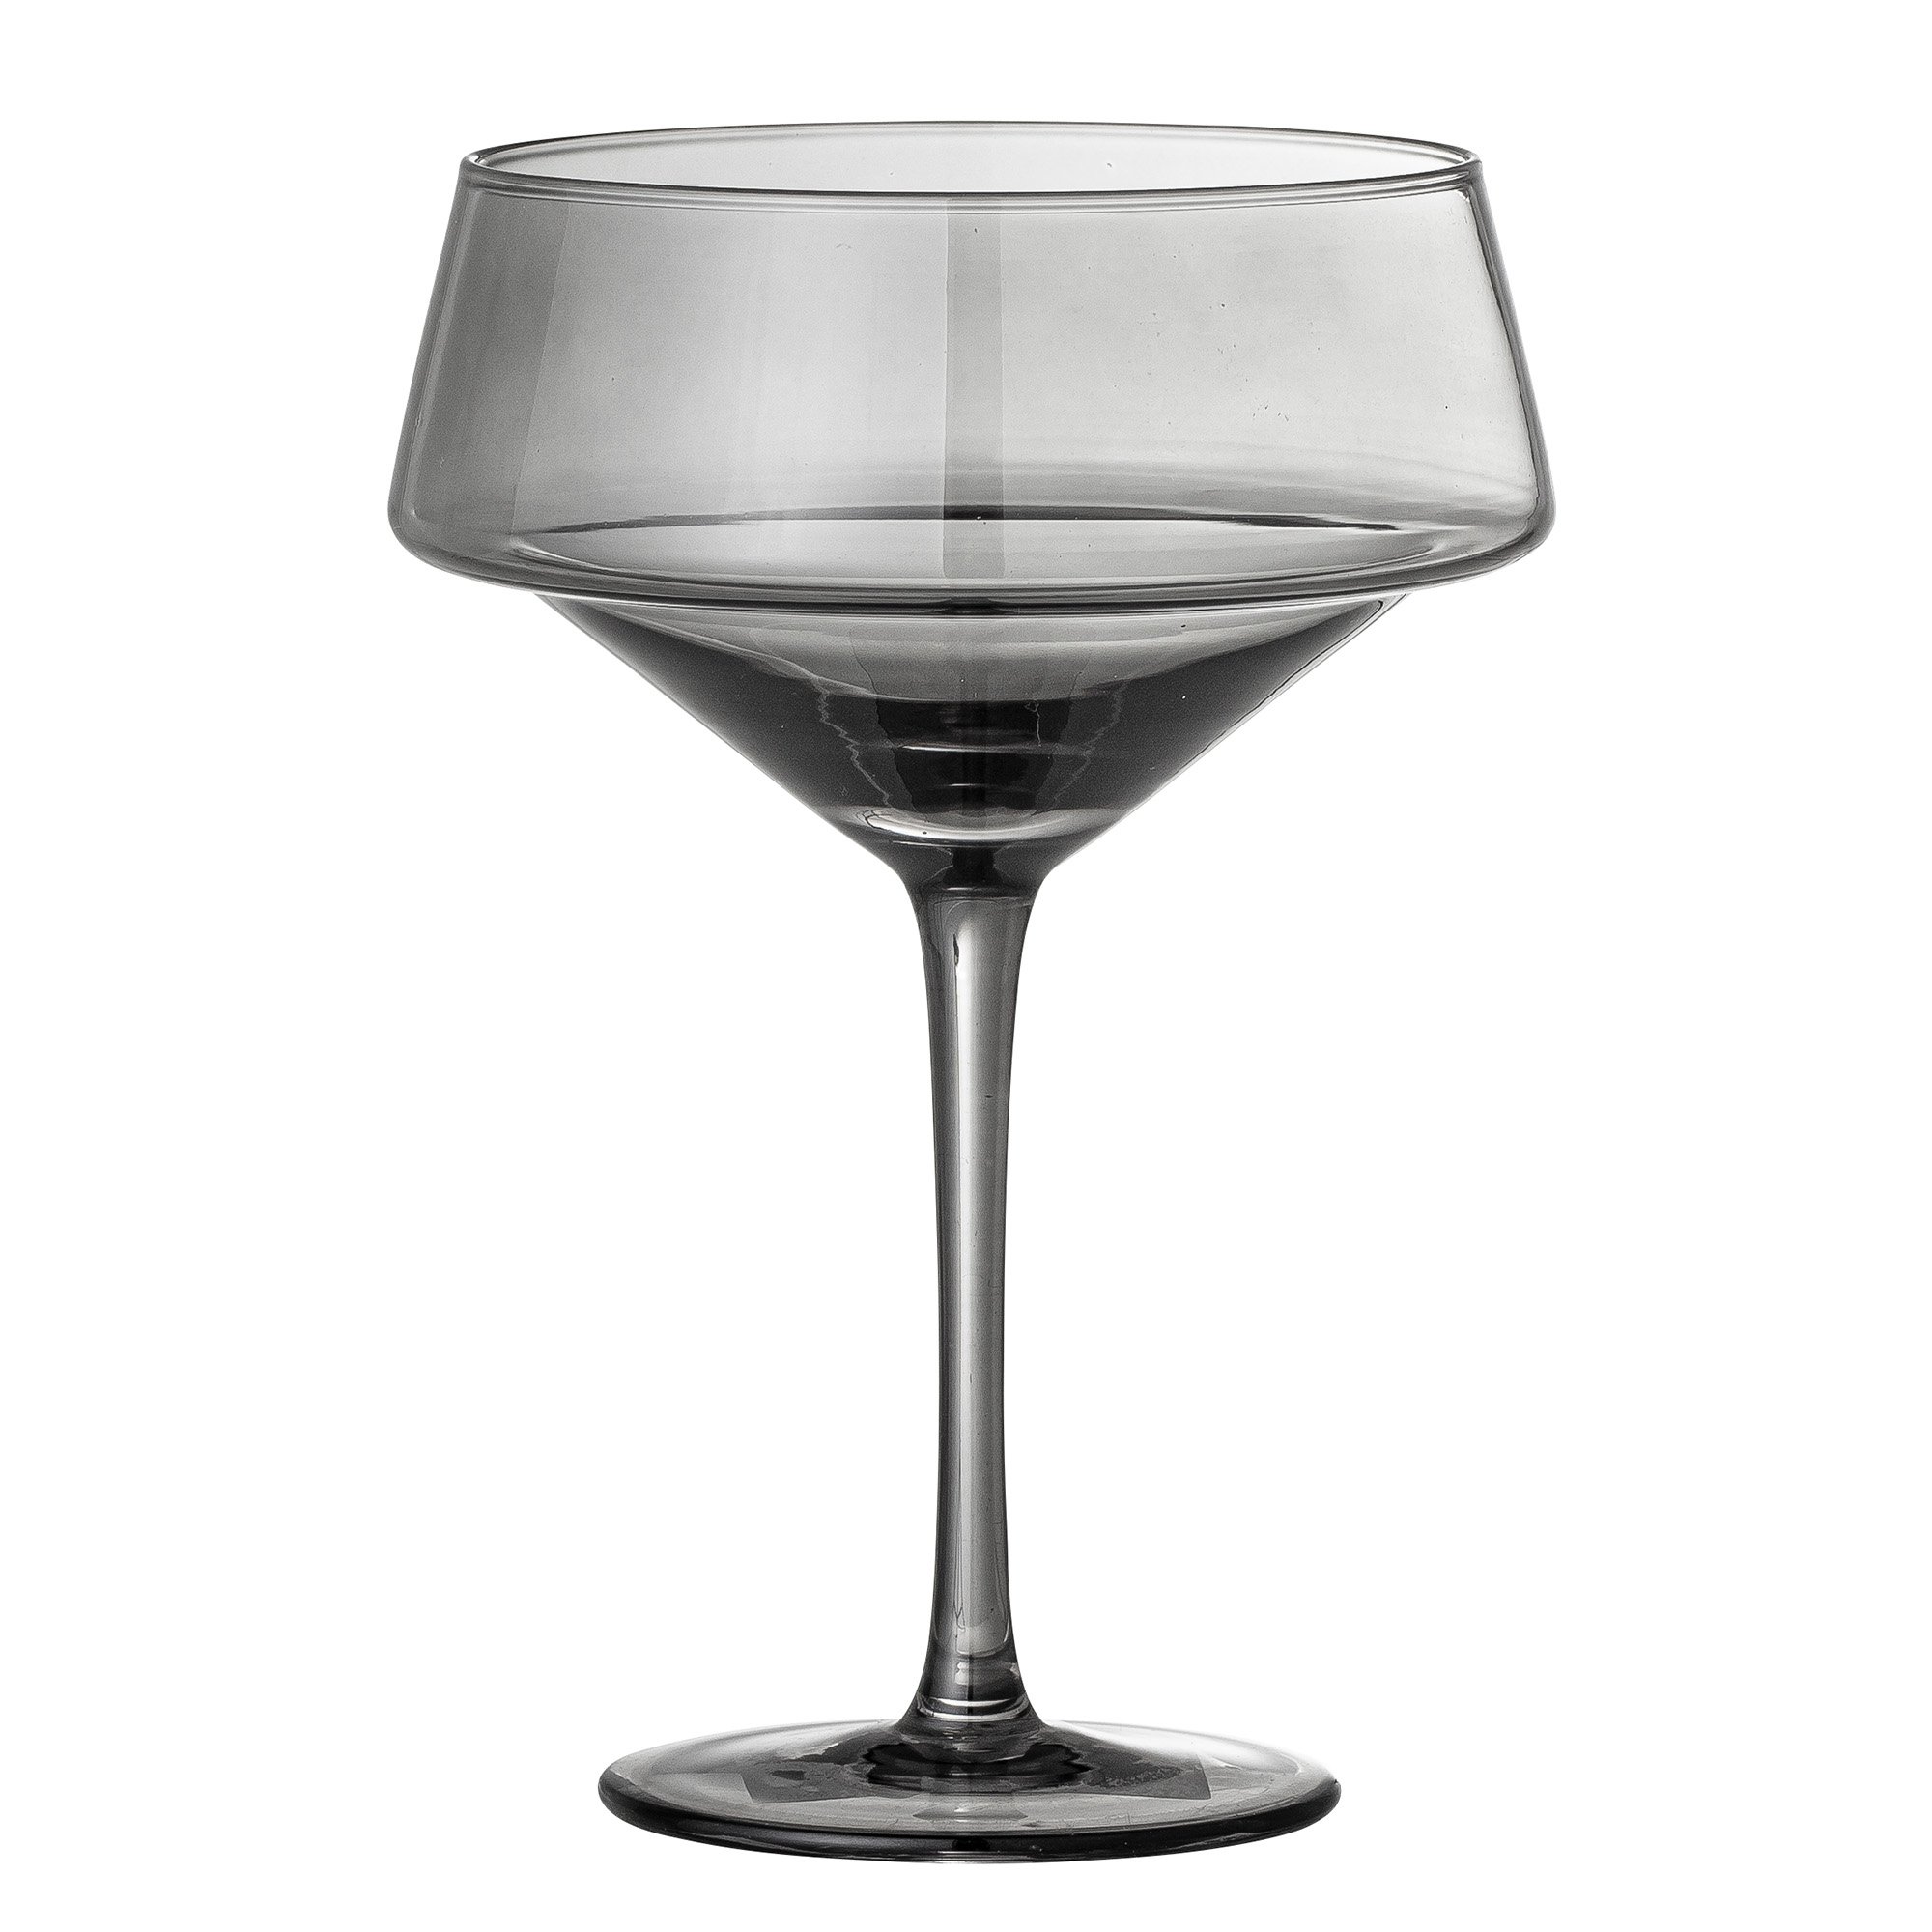 Billede af Yvette, Cocktail glas, Glas, sæt á 4 stk. by Bloomingville (D: 13 cm. x H: 18 cm., Grå)